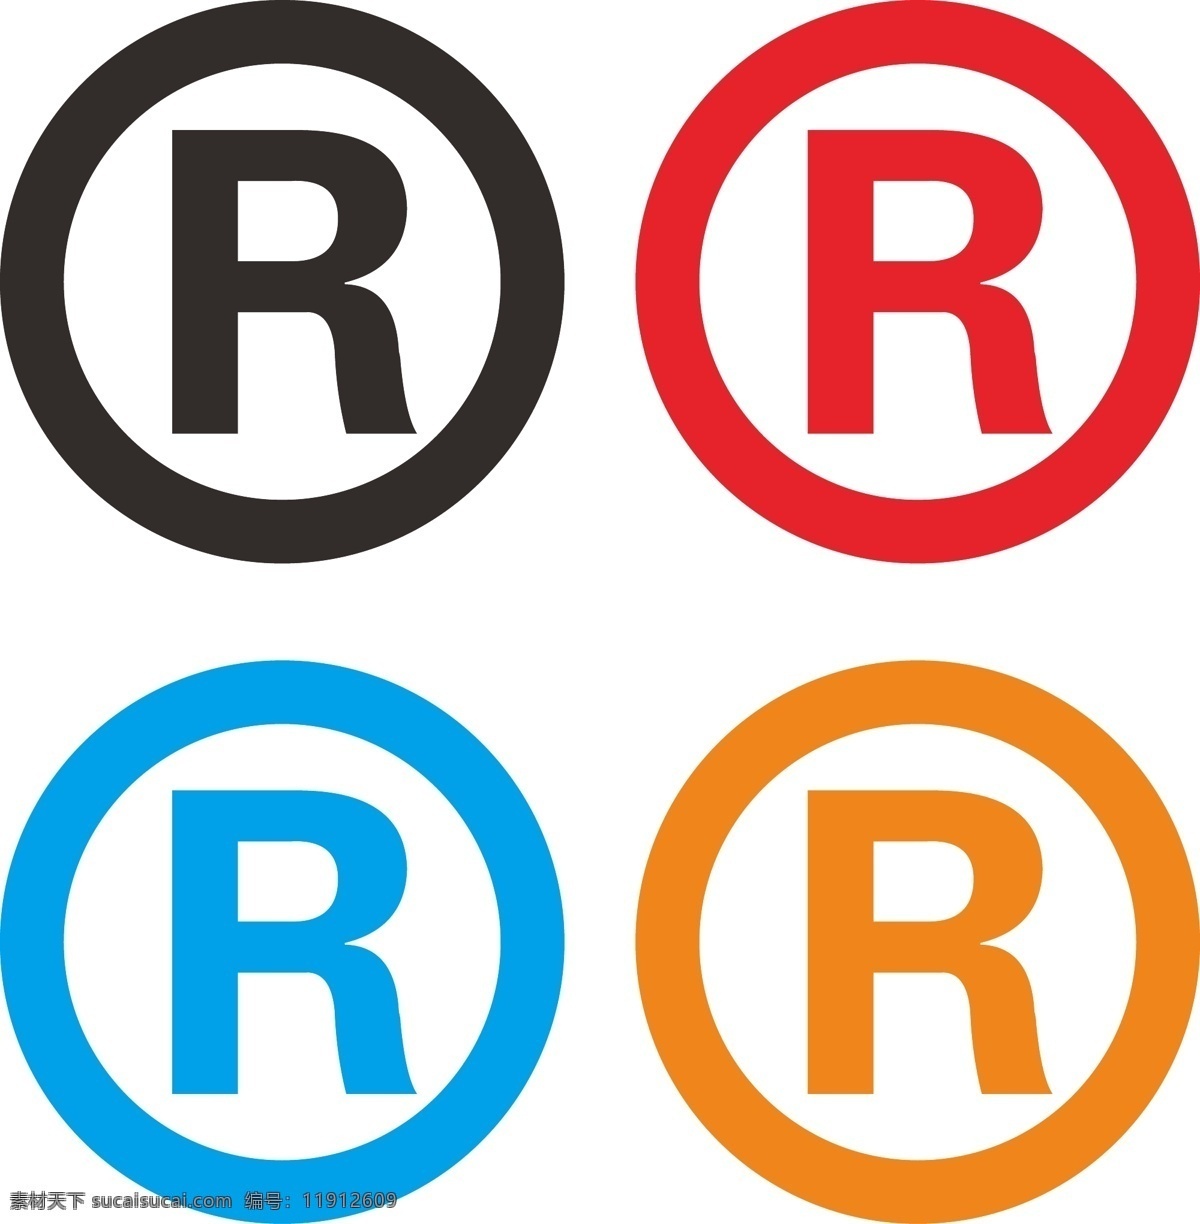 r注册商标 注册商标 r 圈r 注册r 标志r 标志 cdr小技巧 标志图标 公共标识标志